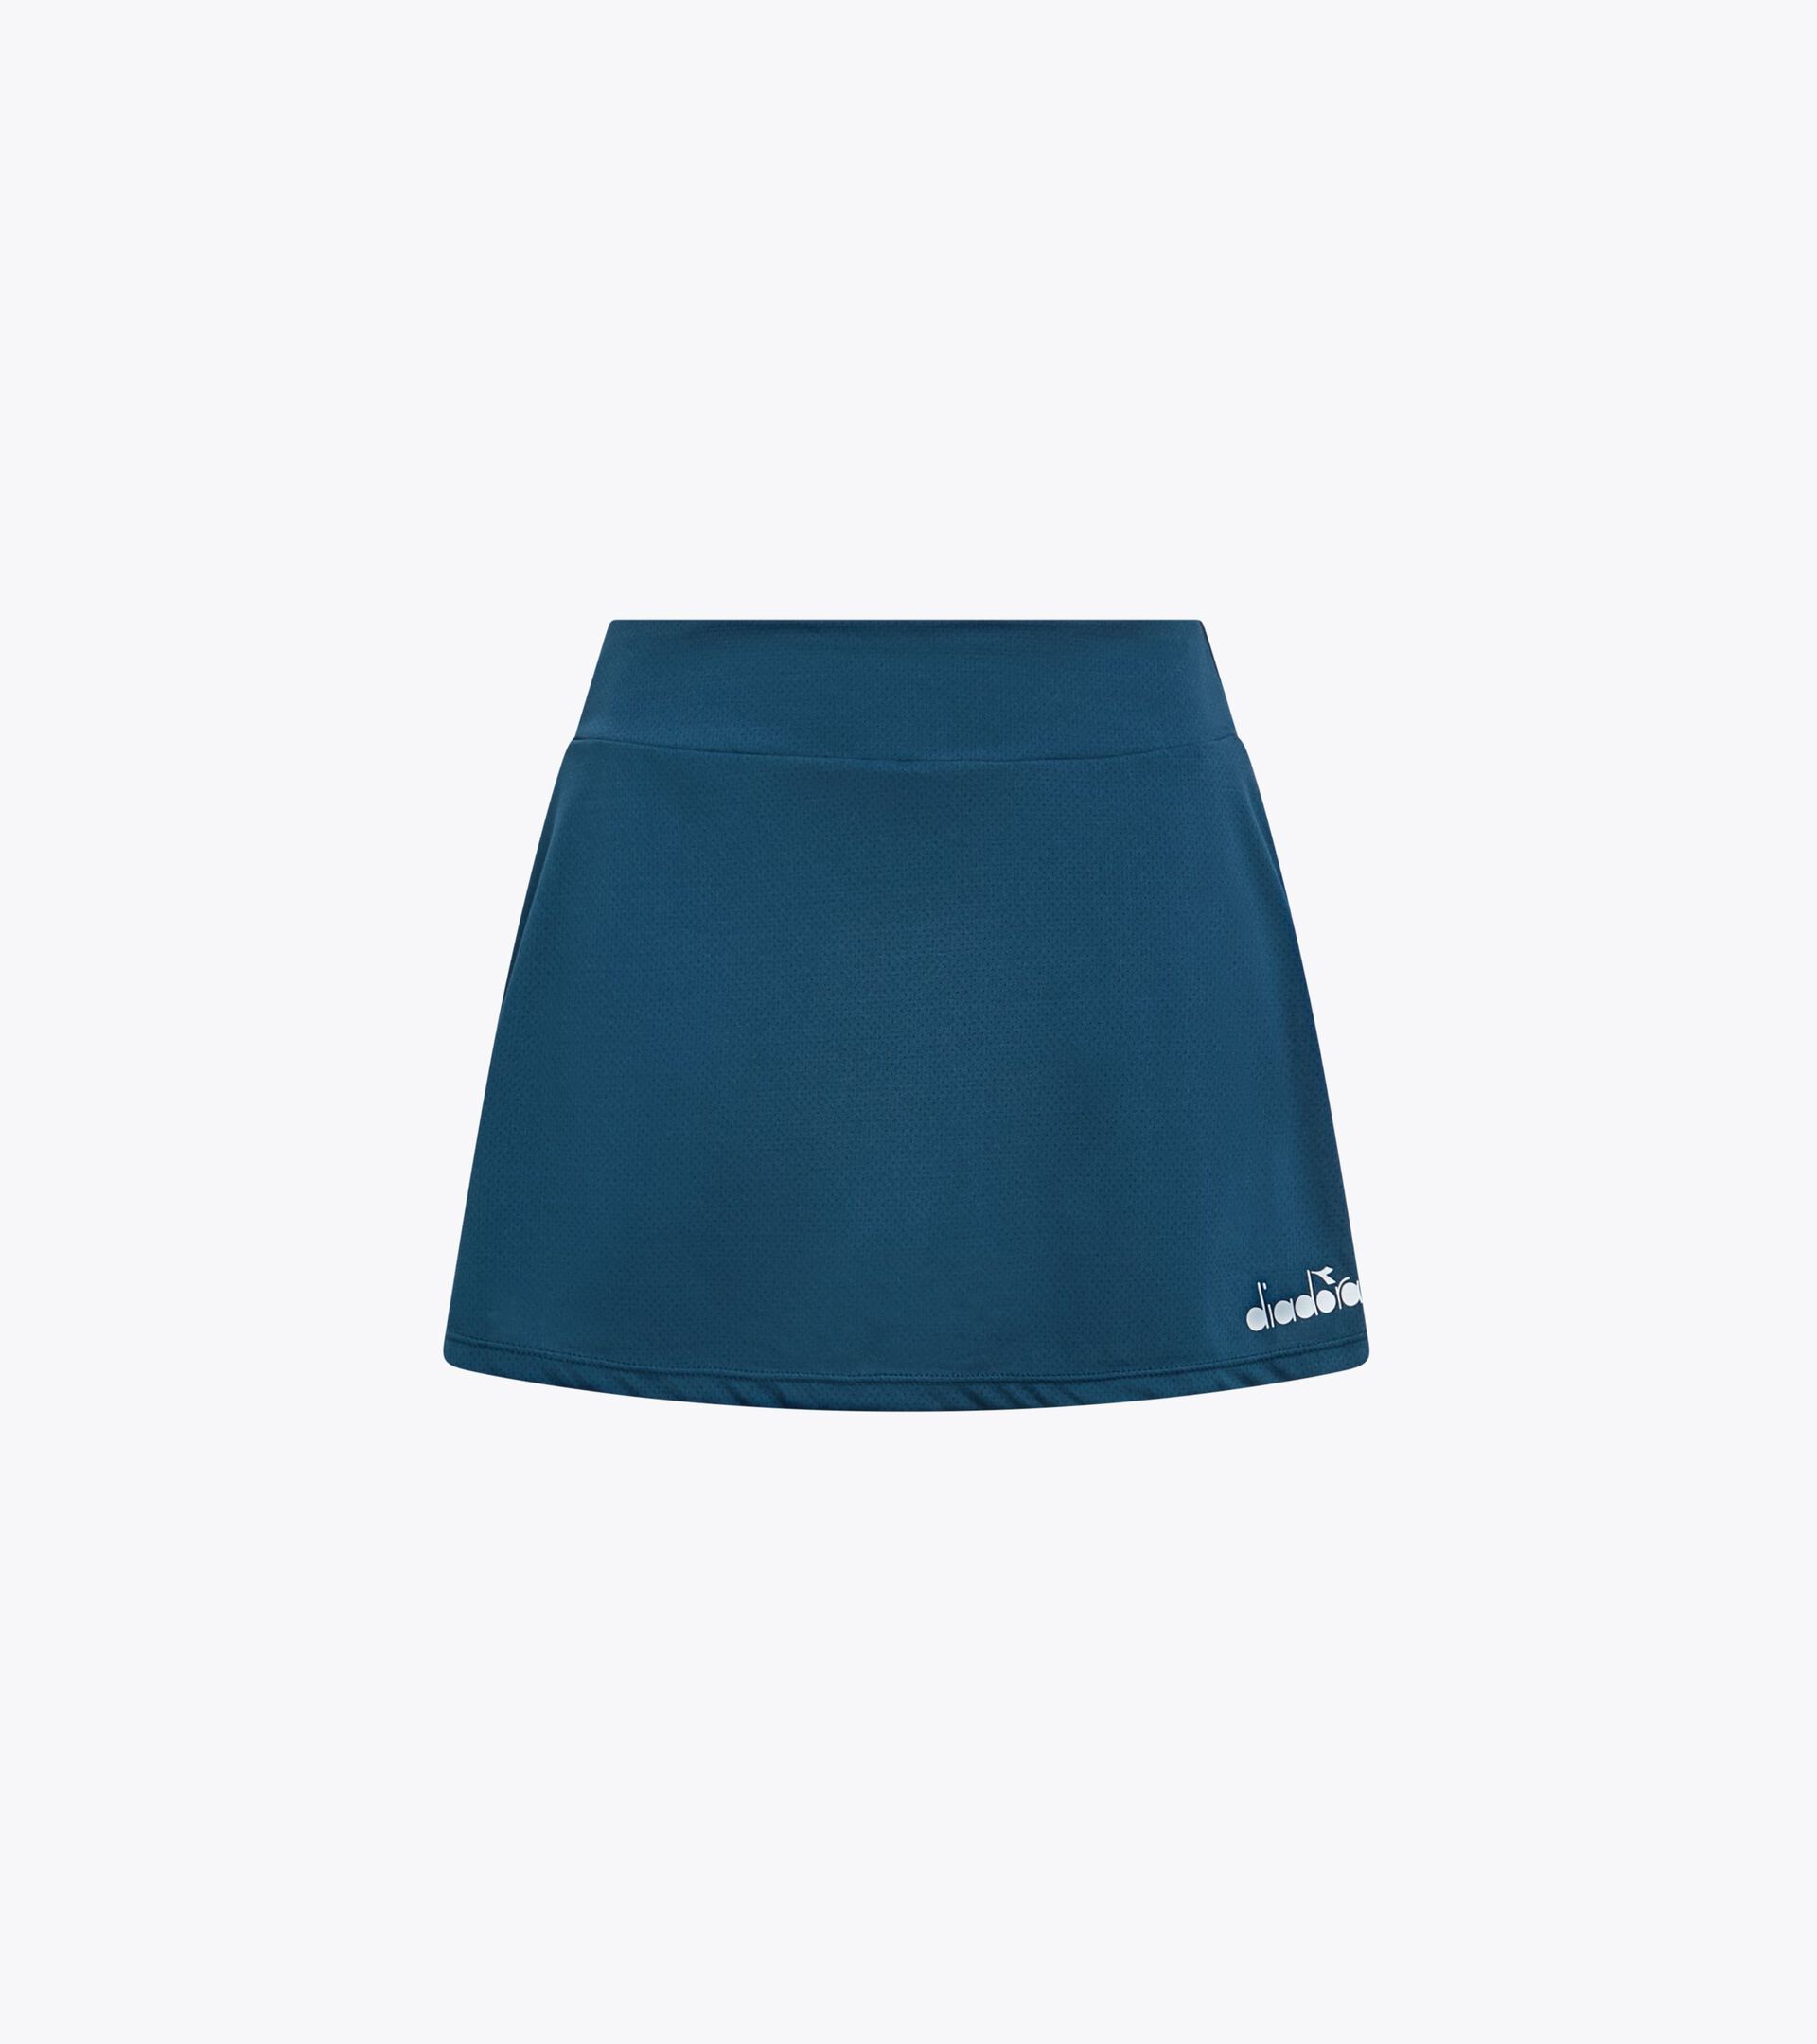 Tennis skirt - Women’s
 L. SKIRT CORE LEGION BLUE - Diadora